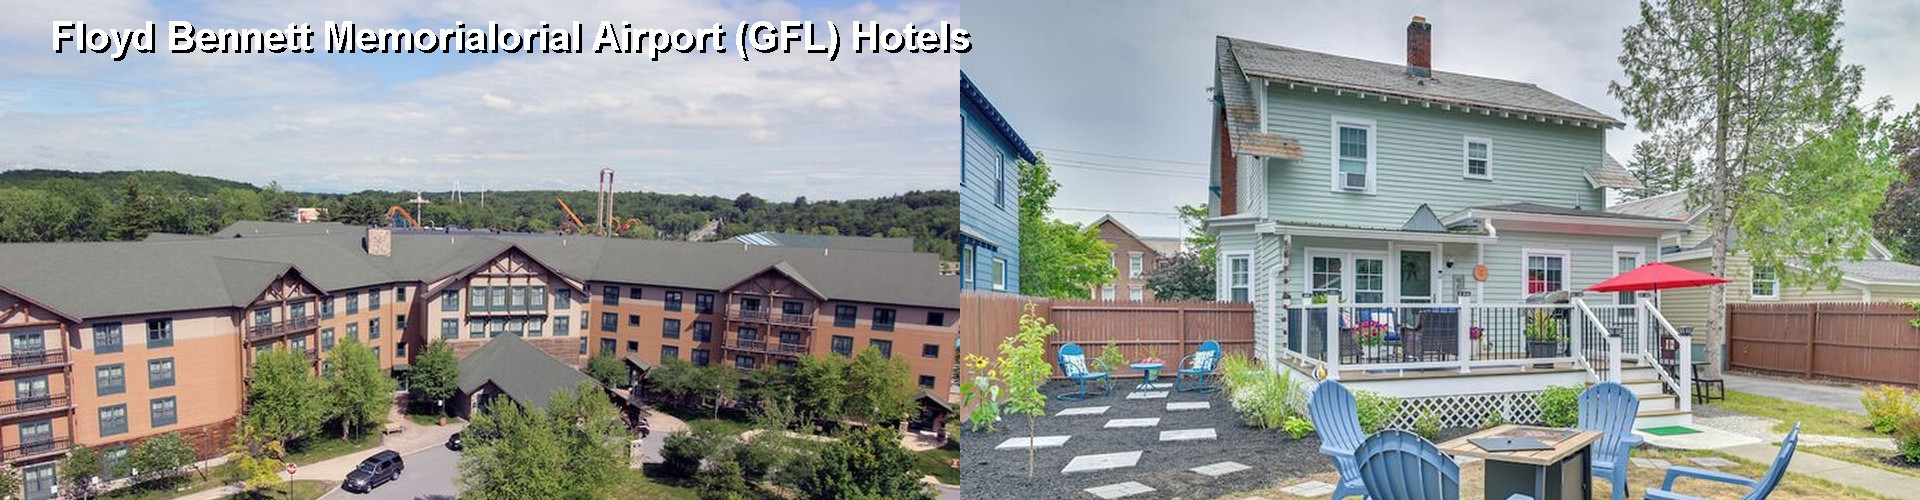 5 Best Hotels near Floyd Bennett Memorialorial Airport (GFL)